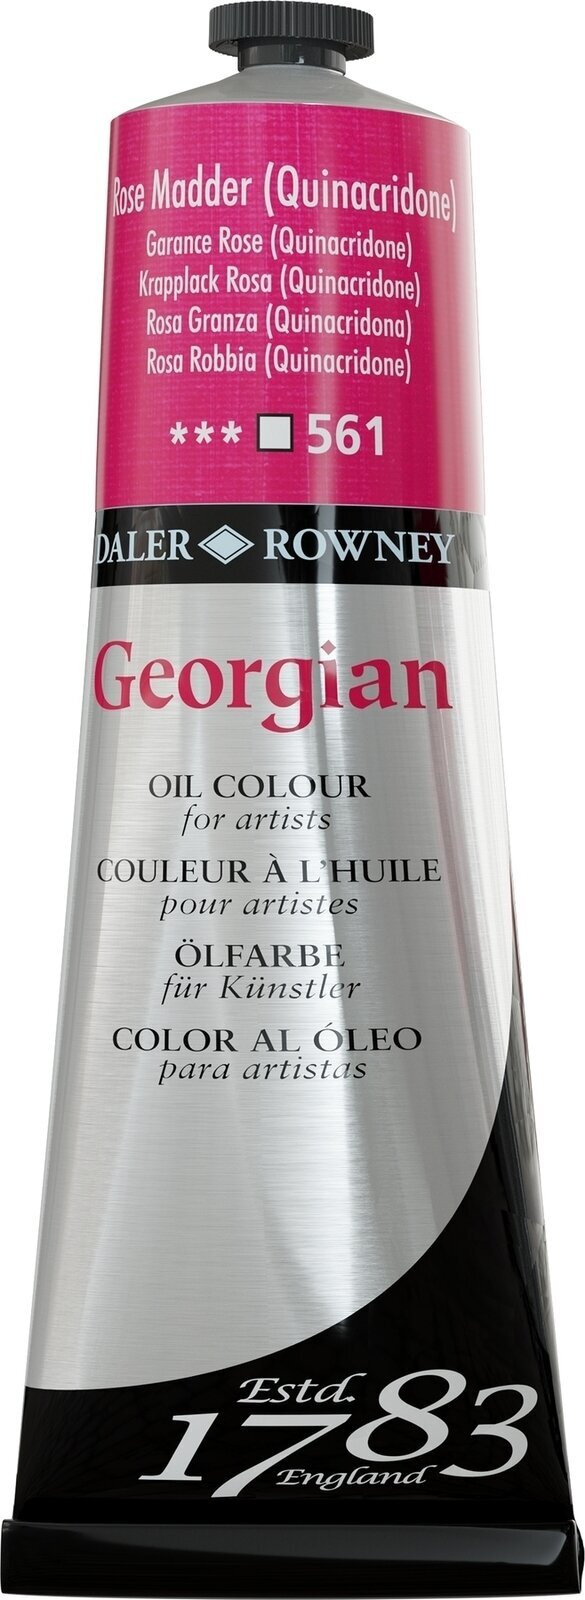 Oil colour Daler Rowney Georgian Oil Paint Rose Madder 225 ml 1 pc